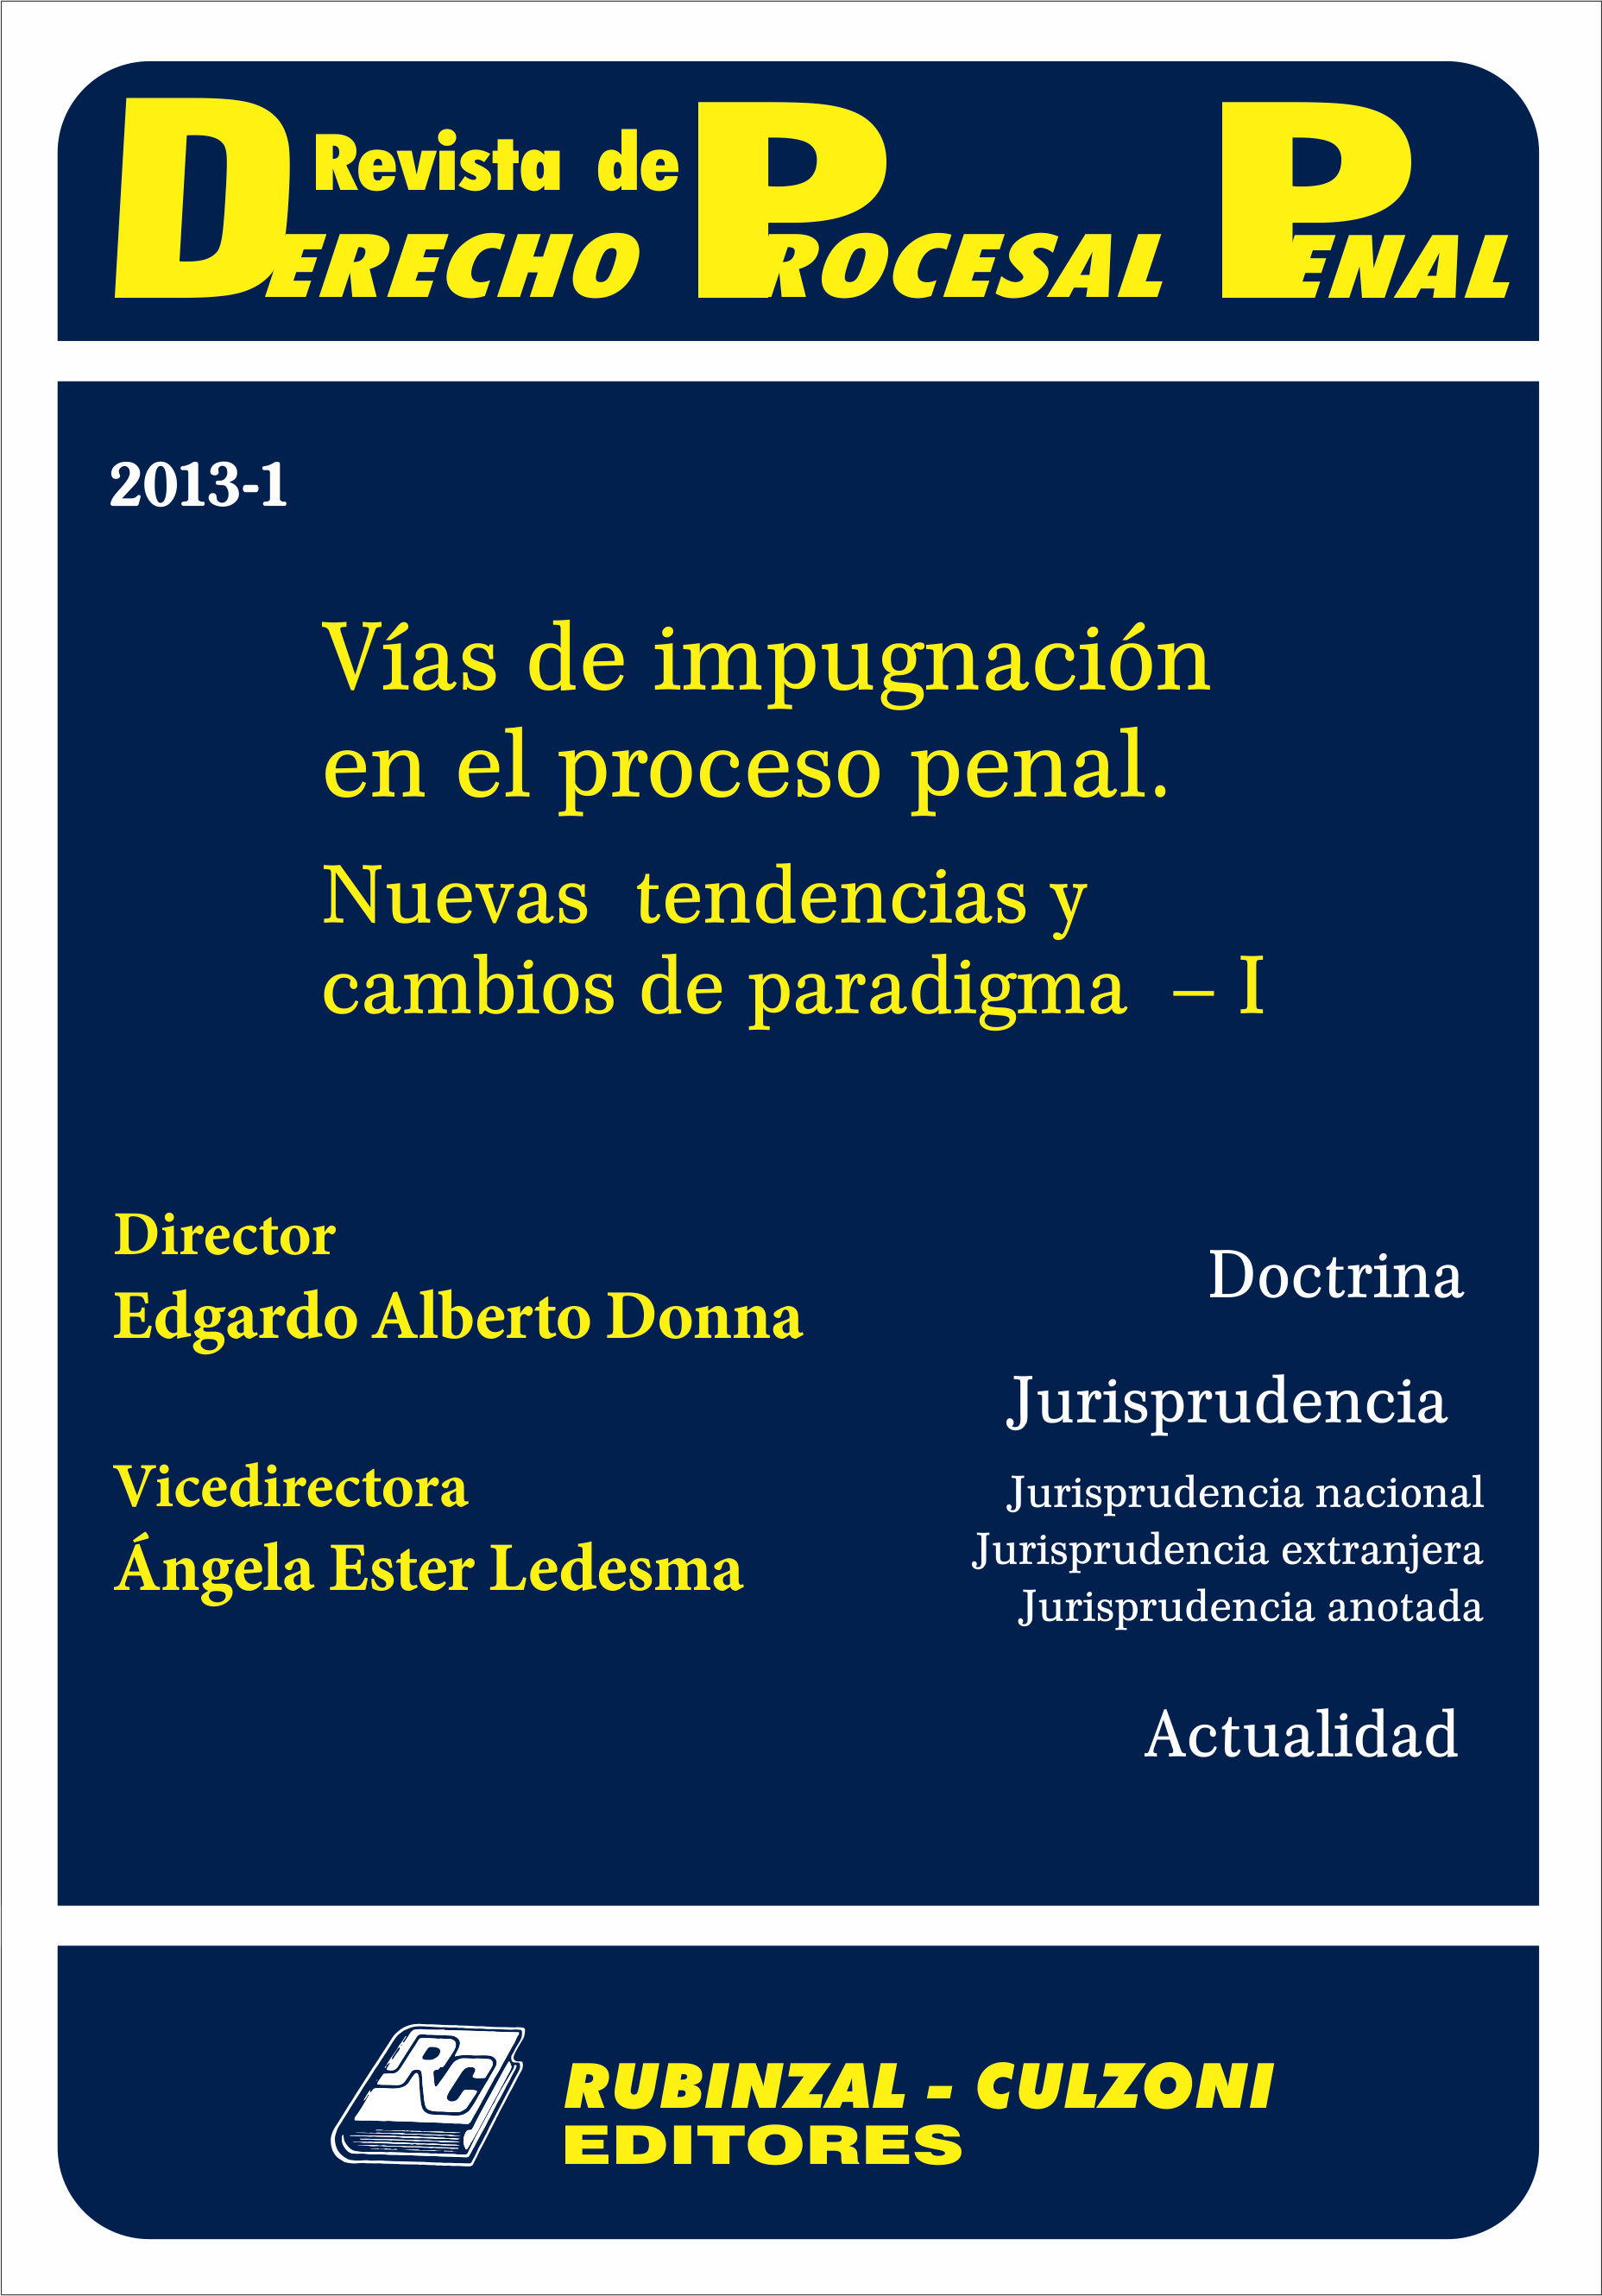 Revista de Derecho Procesal Penal - Vías de impugnación en el proceso penal. Nuevas tendencias y cambios de paradigma - I.